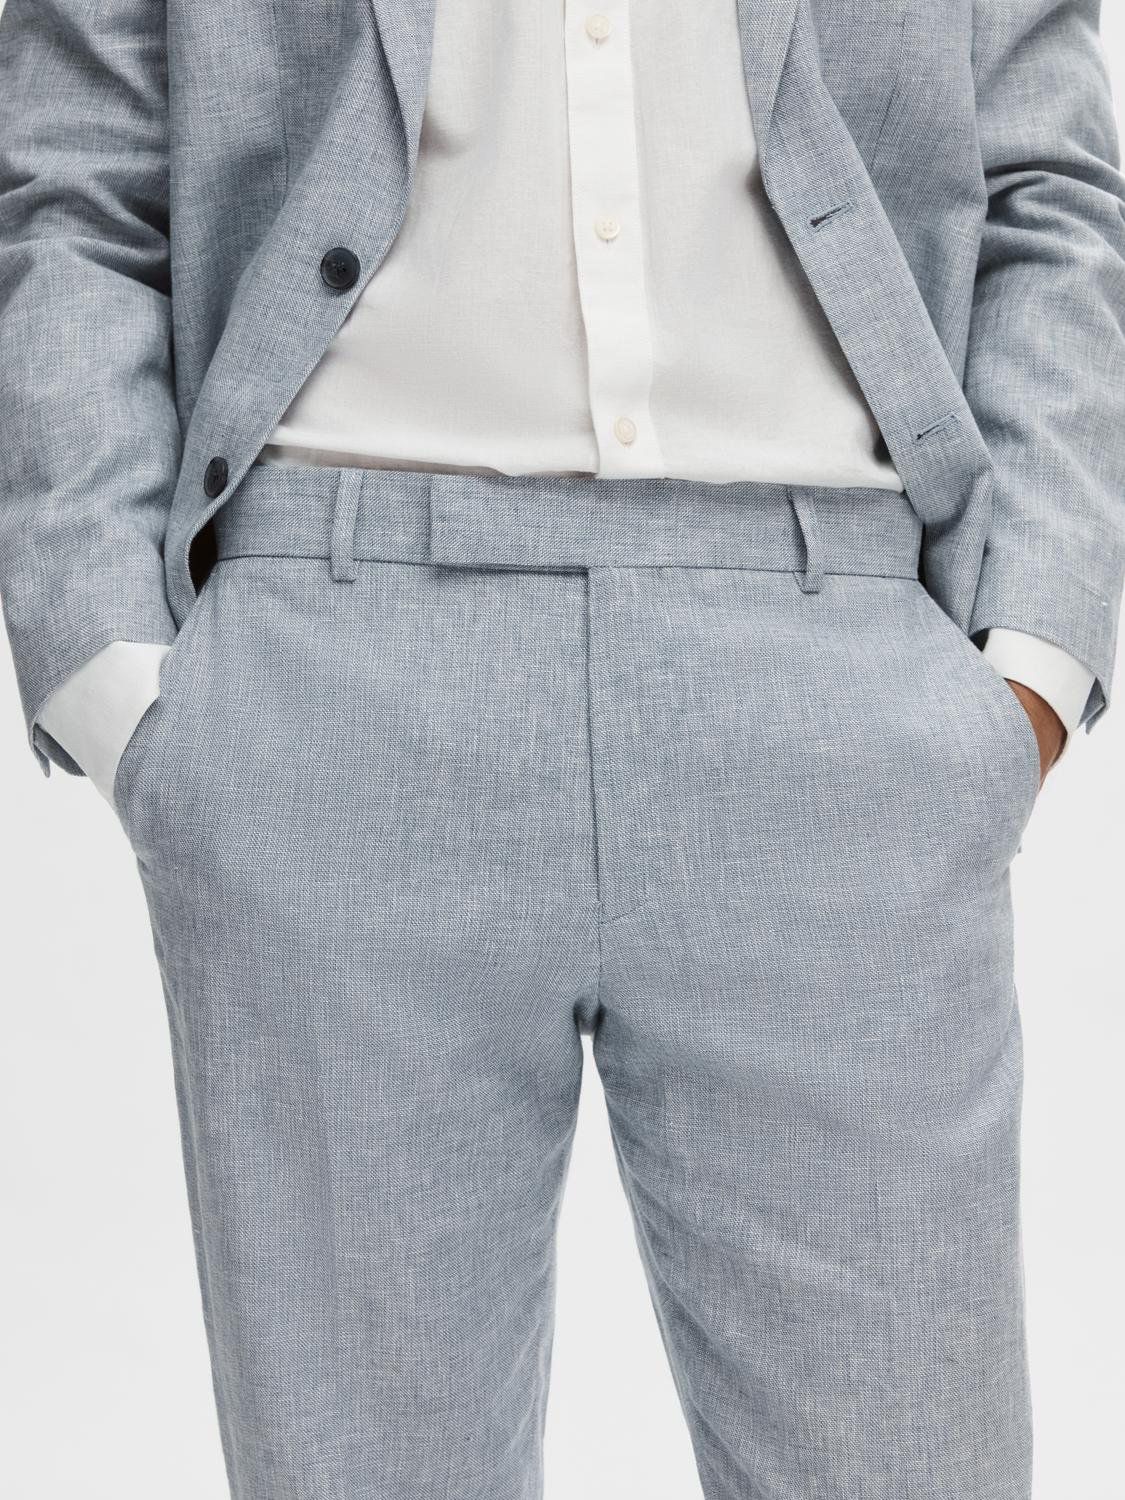 SELECTED HOMME Anton Linen Blend Suit Trousers, Light Blue, 30R